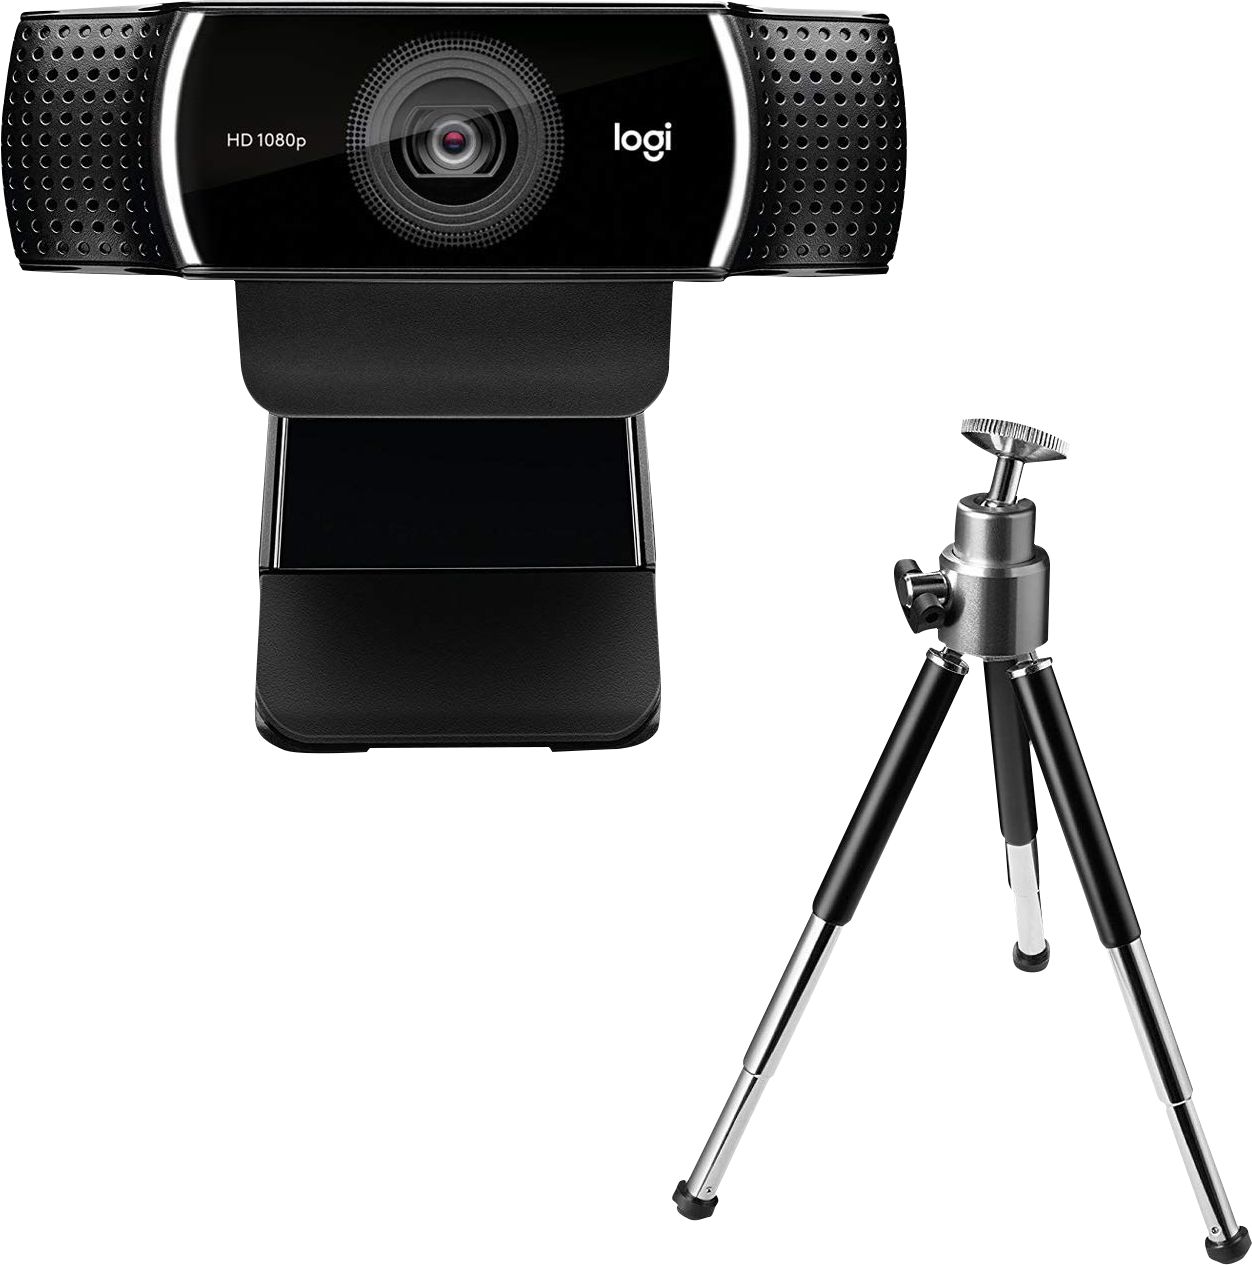 tilskuer utilsigtet hændelse afgår Logitech C922 Pro Stream 1080 Webcam for HD Video Streaming Black  960-001087 - Best Buy